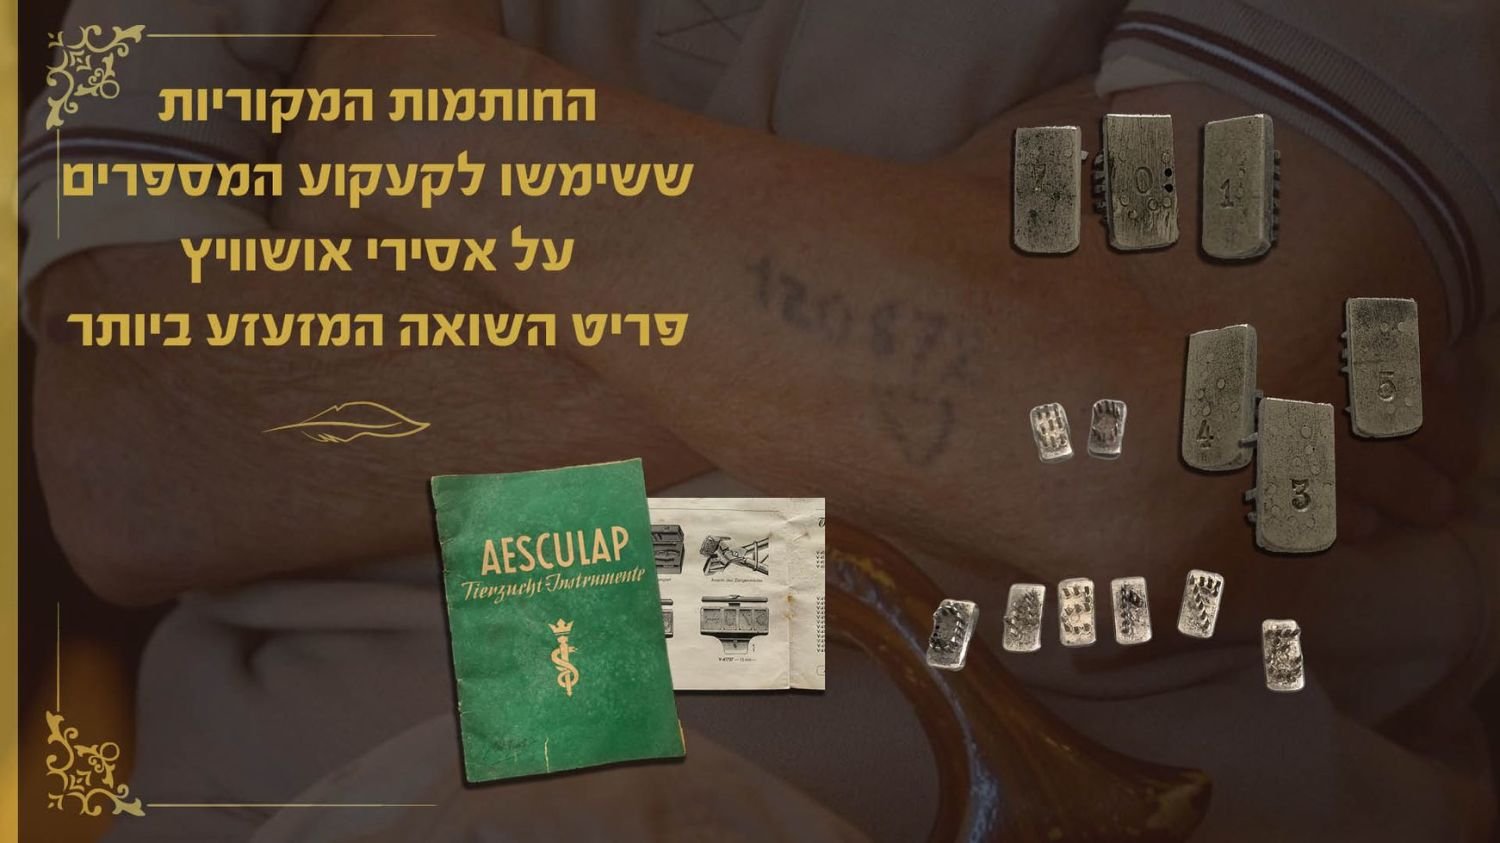 Conjunto de carimbos de agulhas, usados para tatuar prisioneiros em Auschwitz